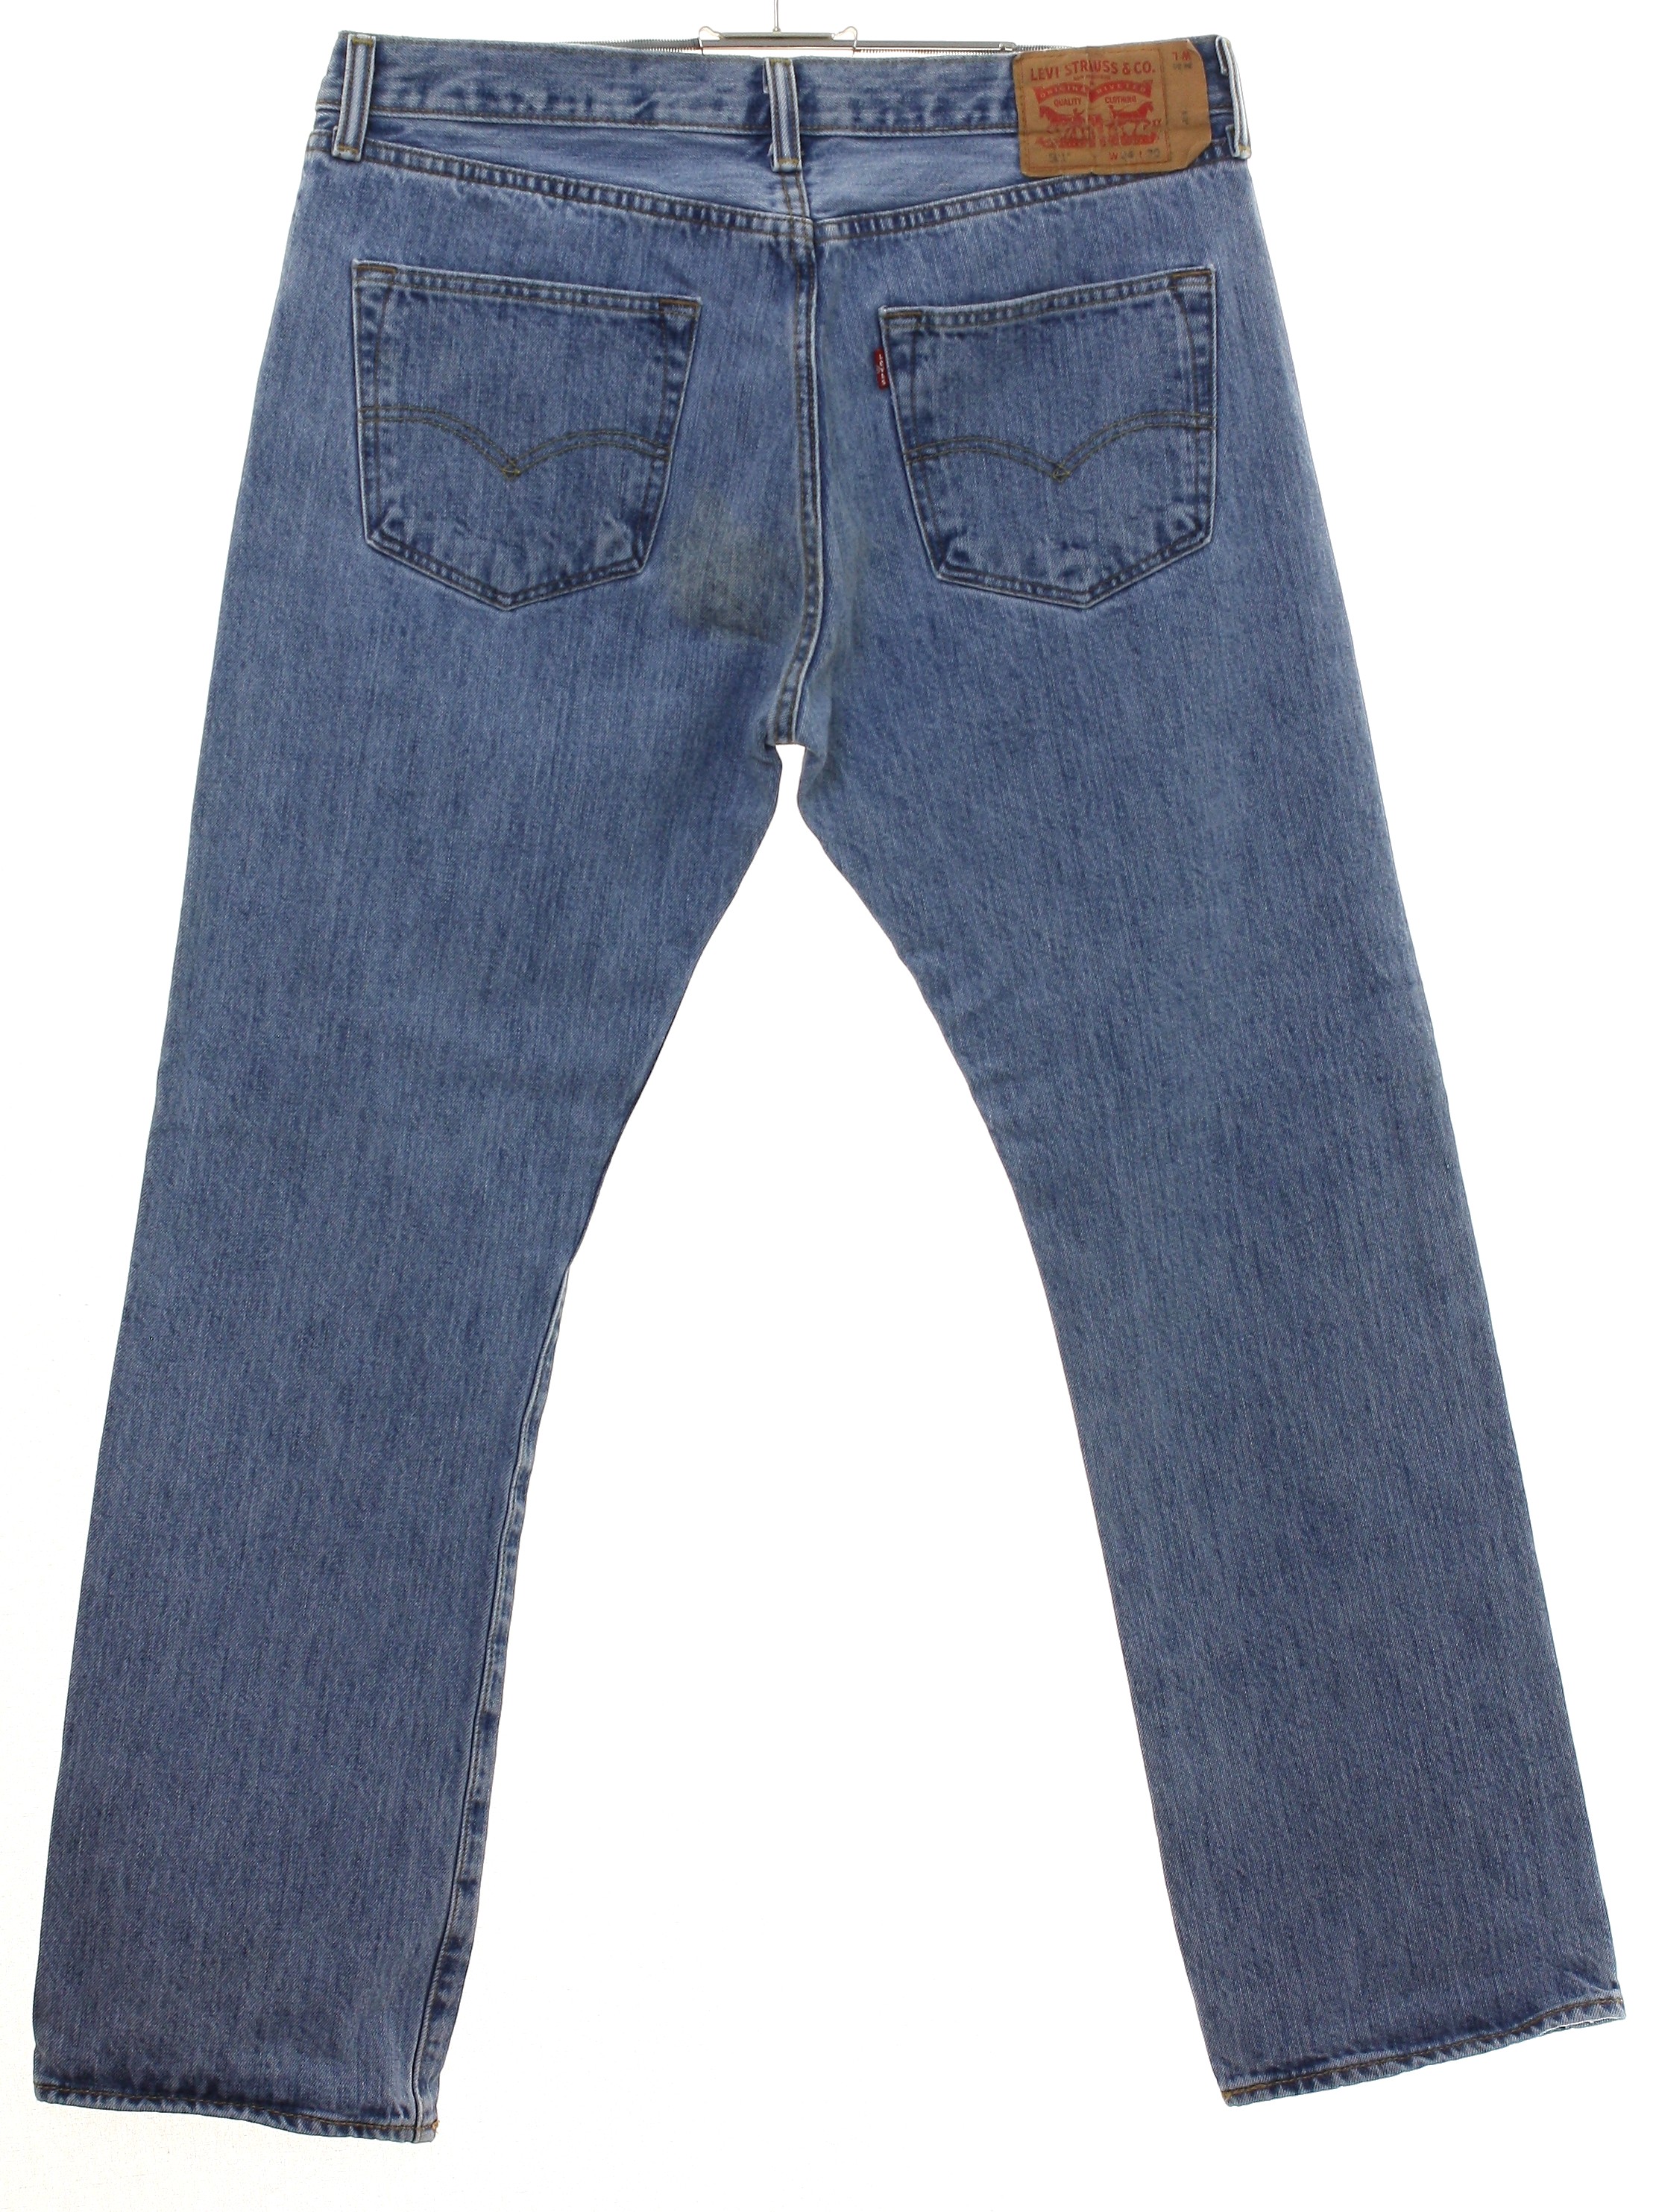 Pants: 90s -Levis 501- Menslight blue wash cotton denim denim jeans ...